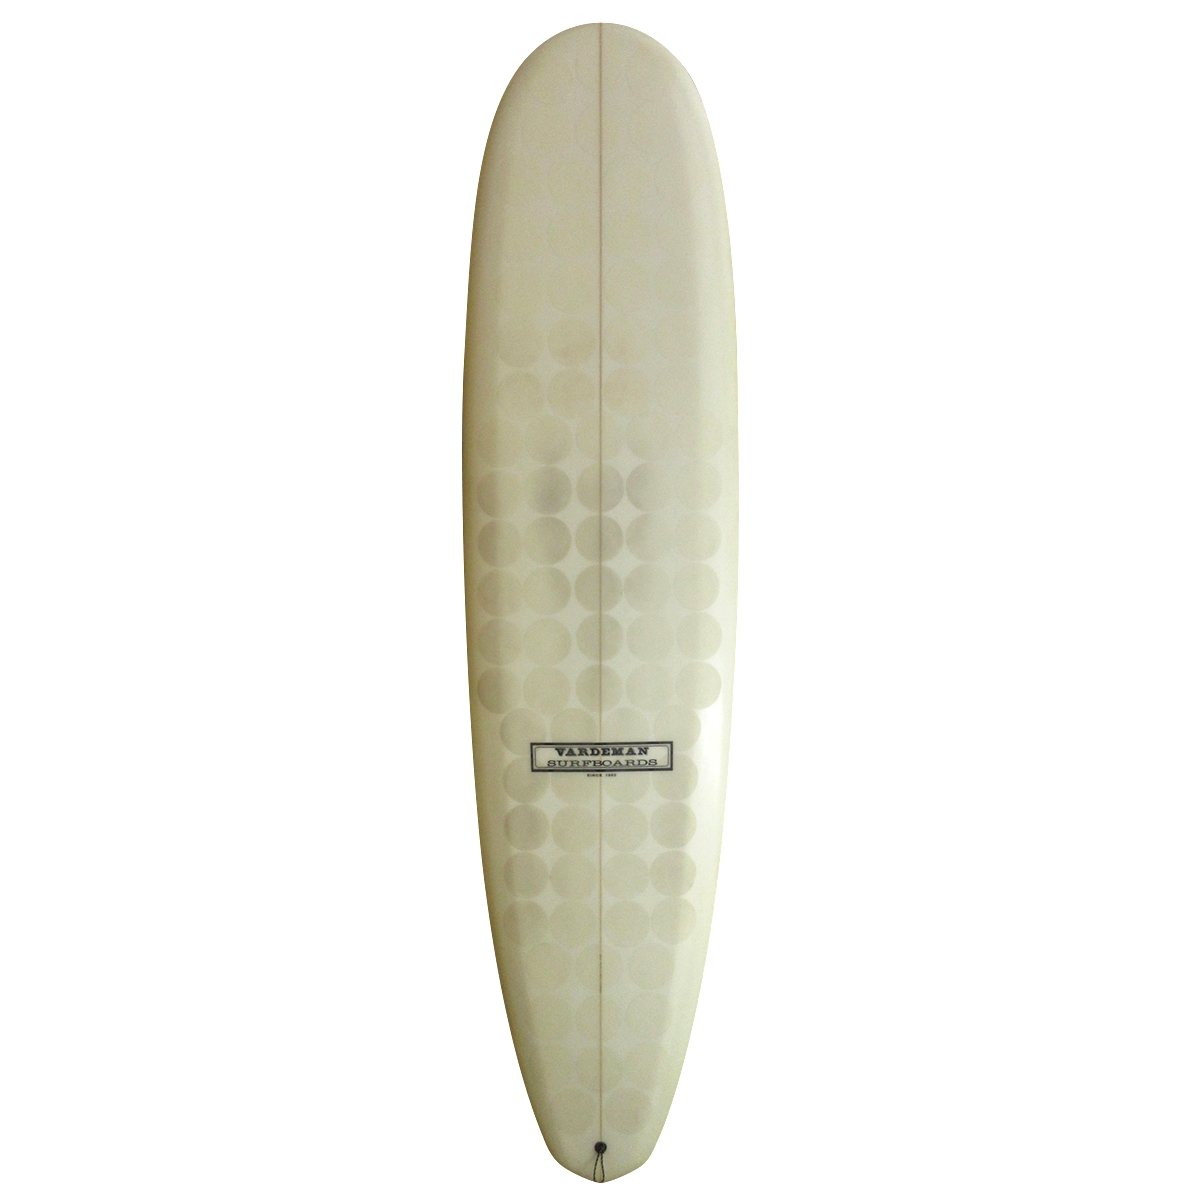 VARDEMAN SURFBOARDS / VARDEMAN SURFBOARDS / SUPER BIGGIE MINI EPS 8`0